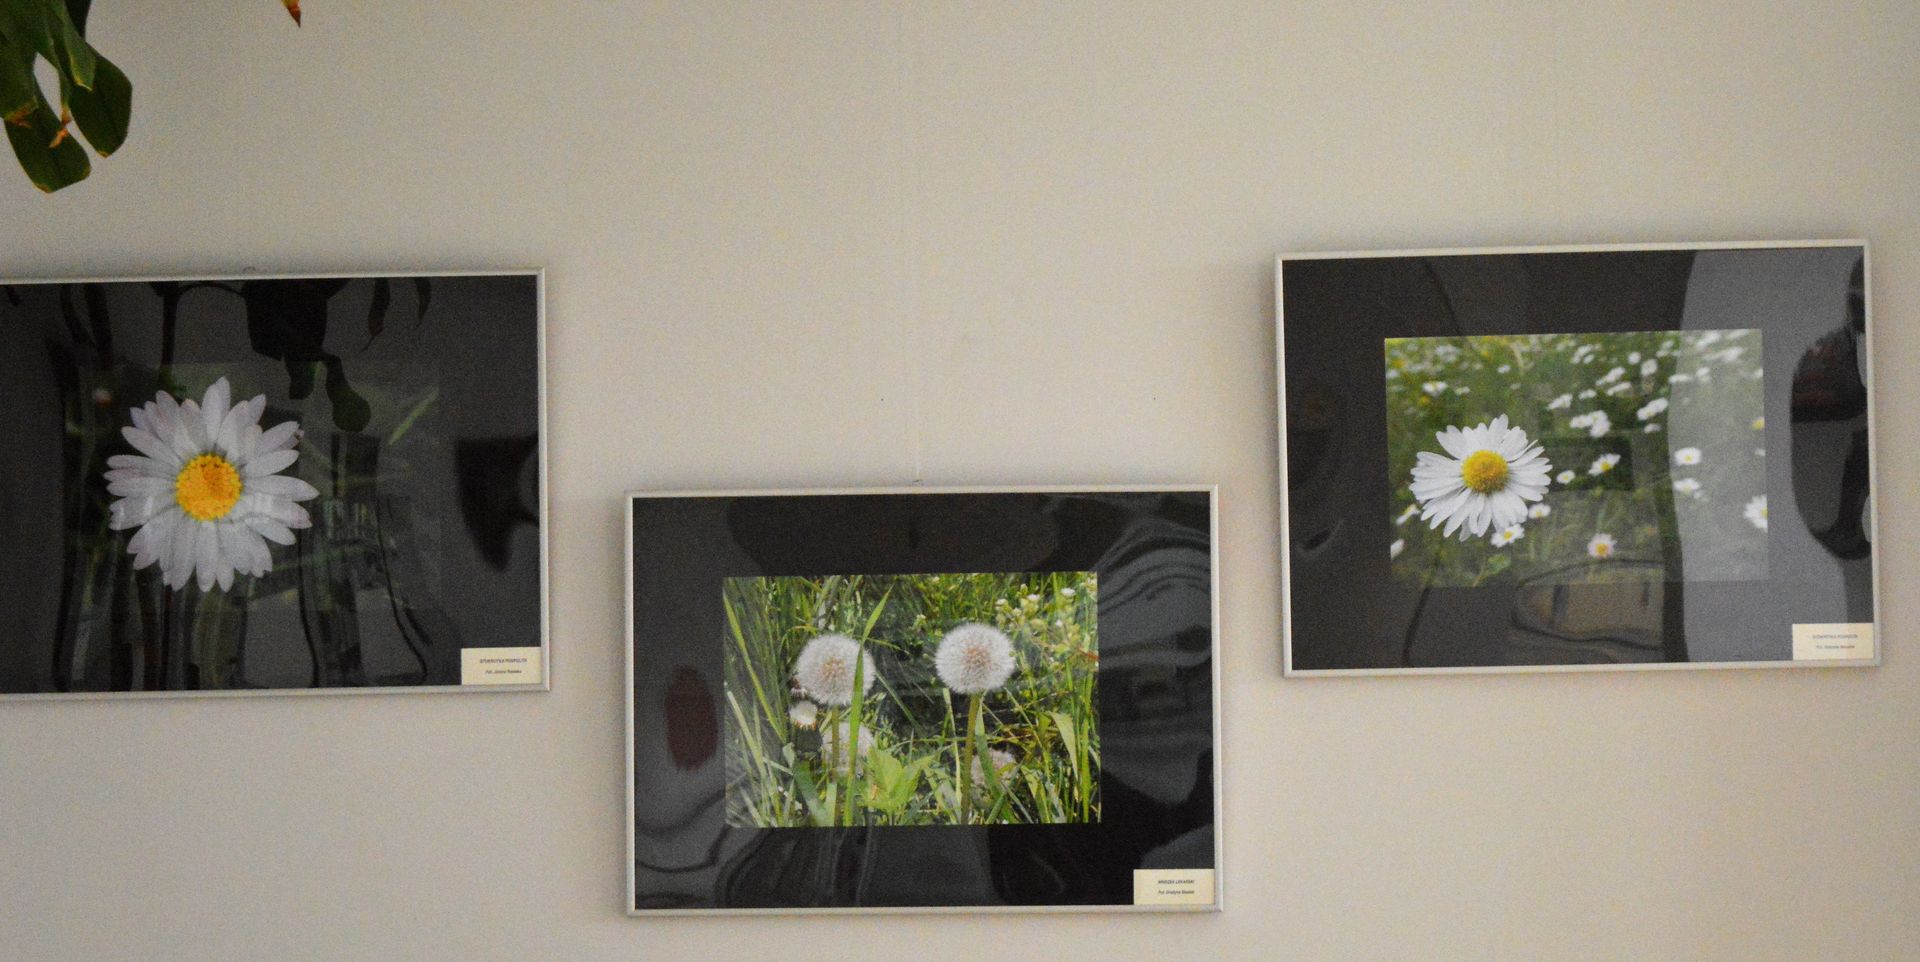 Trzy fotografie przedstawiające białe kwiaty polne